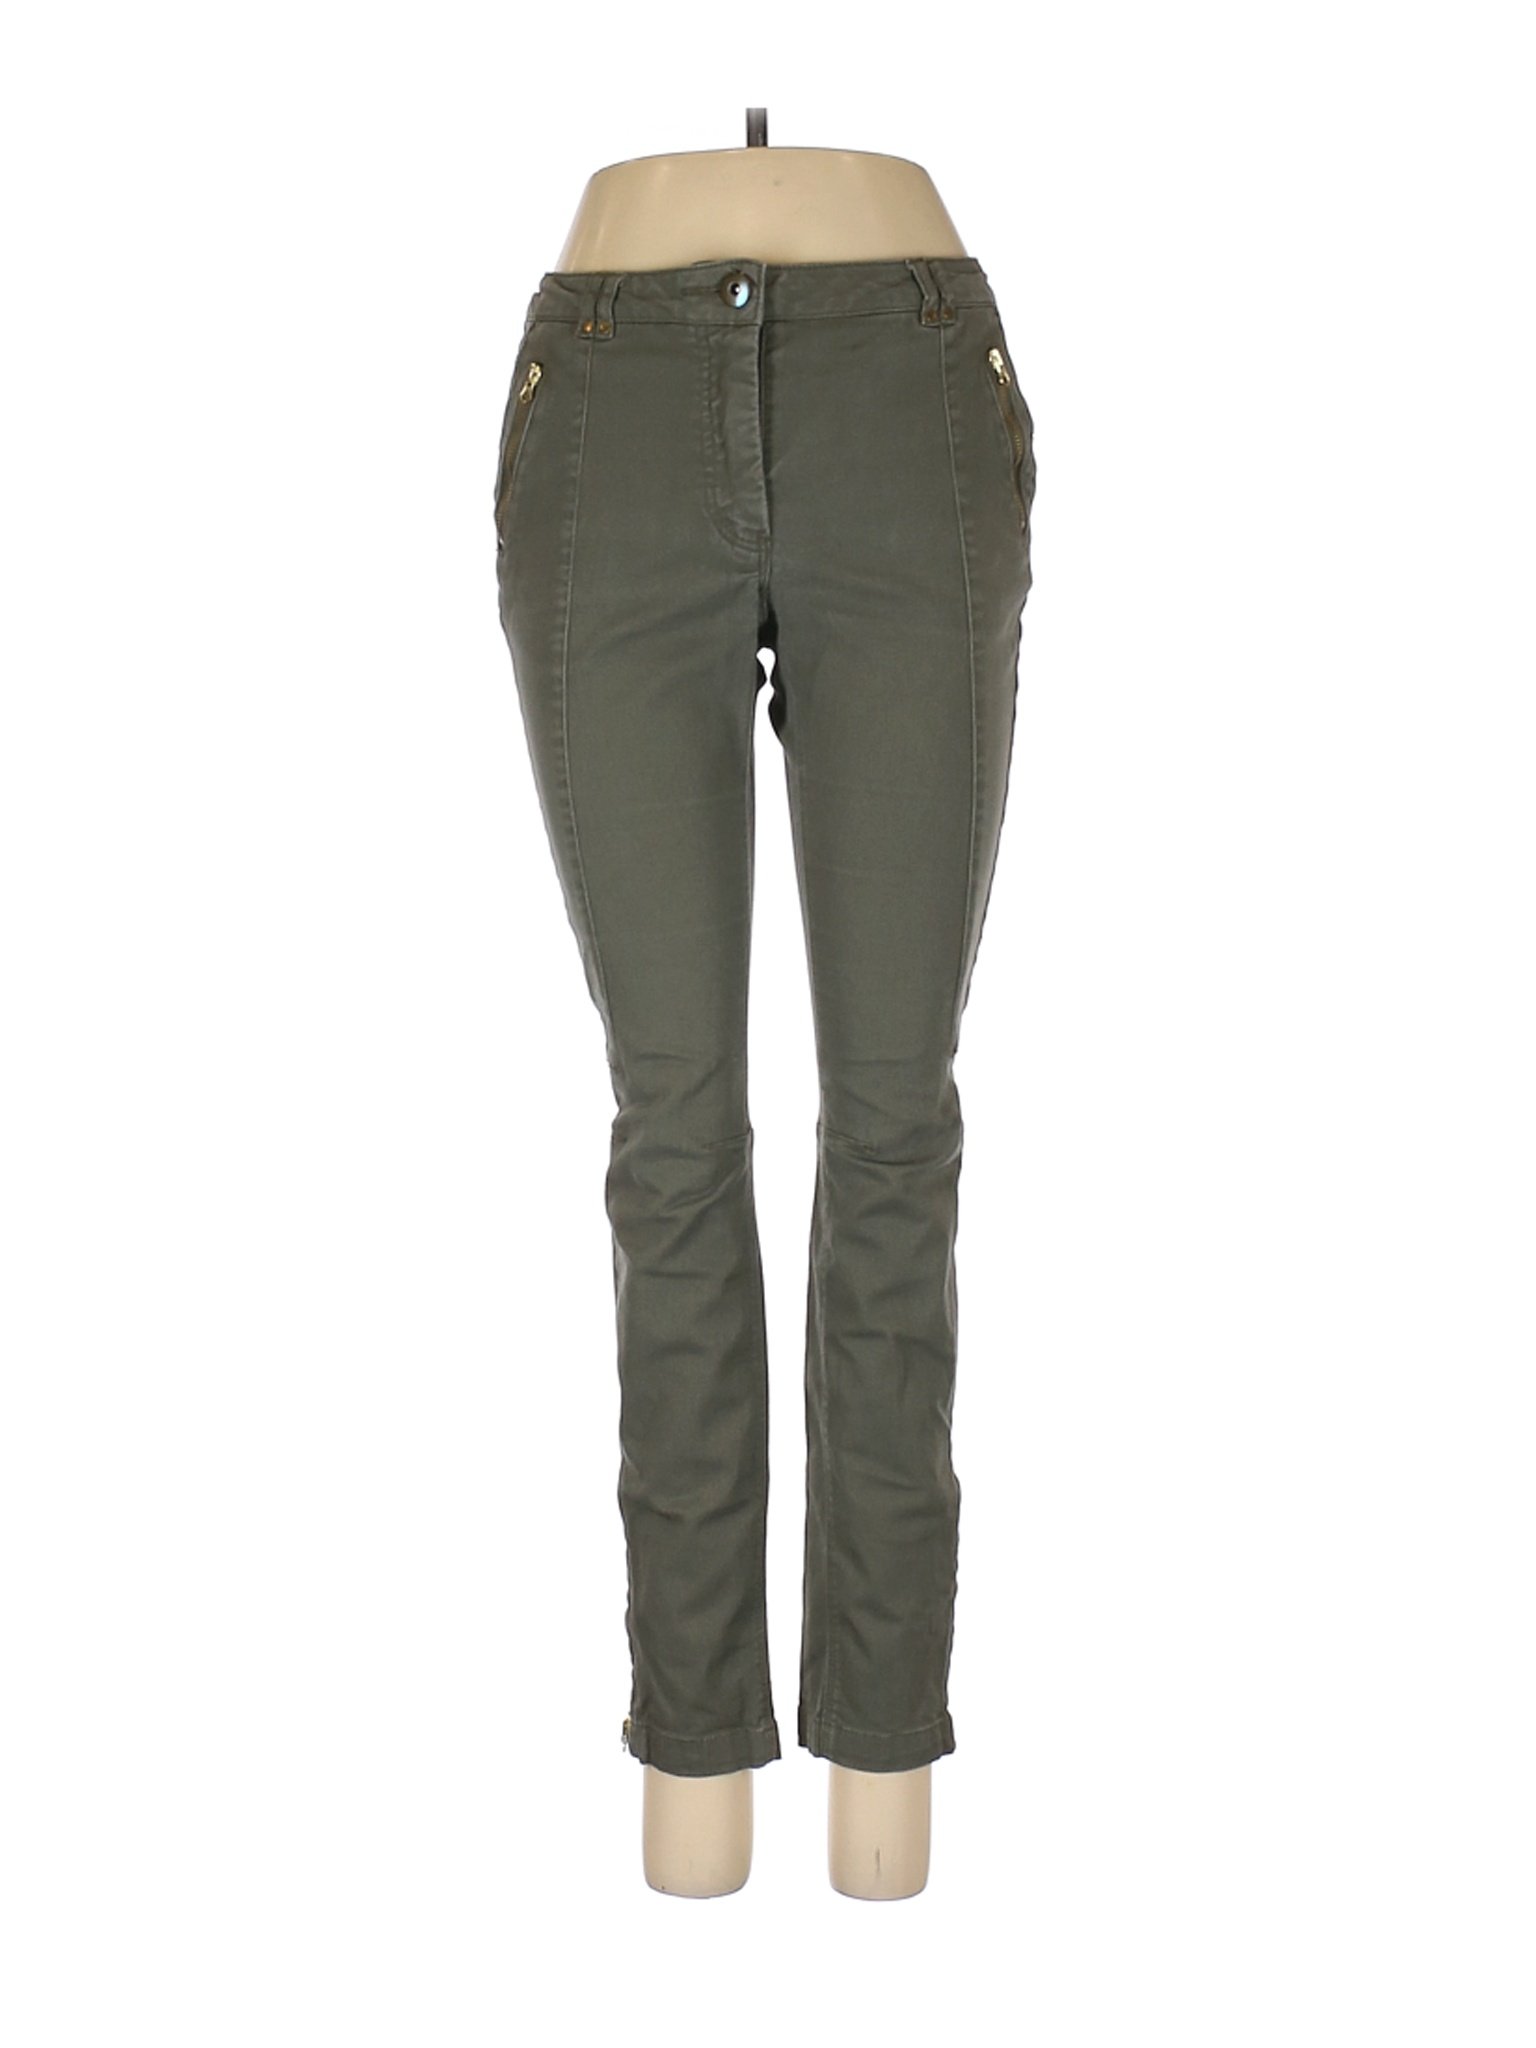 H&M Women Green Jeans 6 | eBay